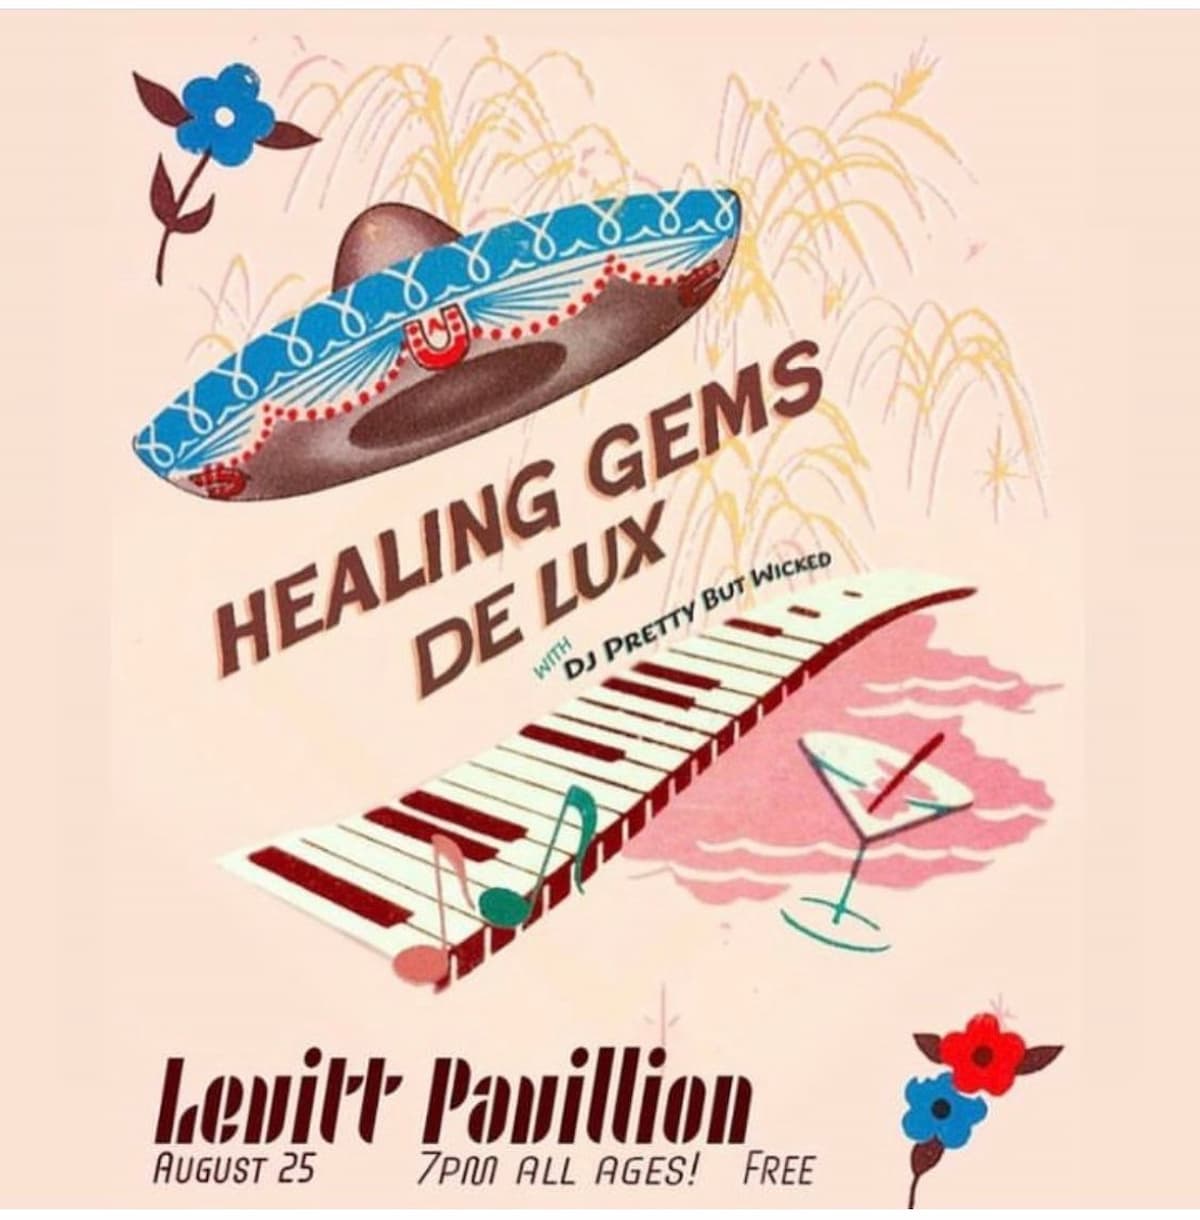 Healing Gems / De Lux